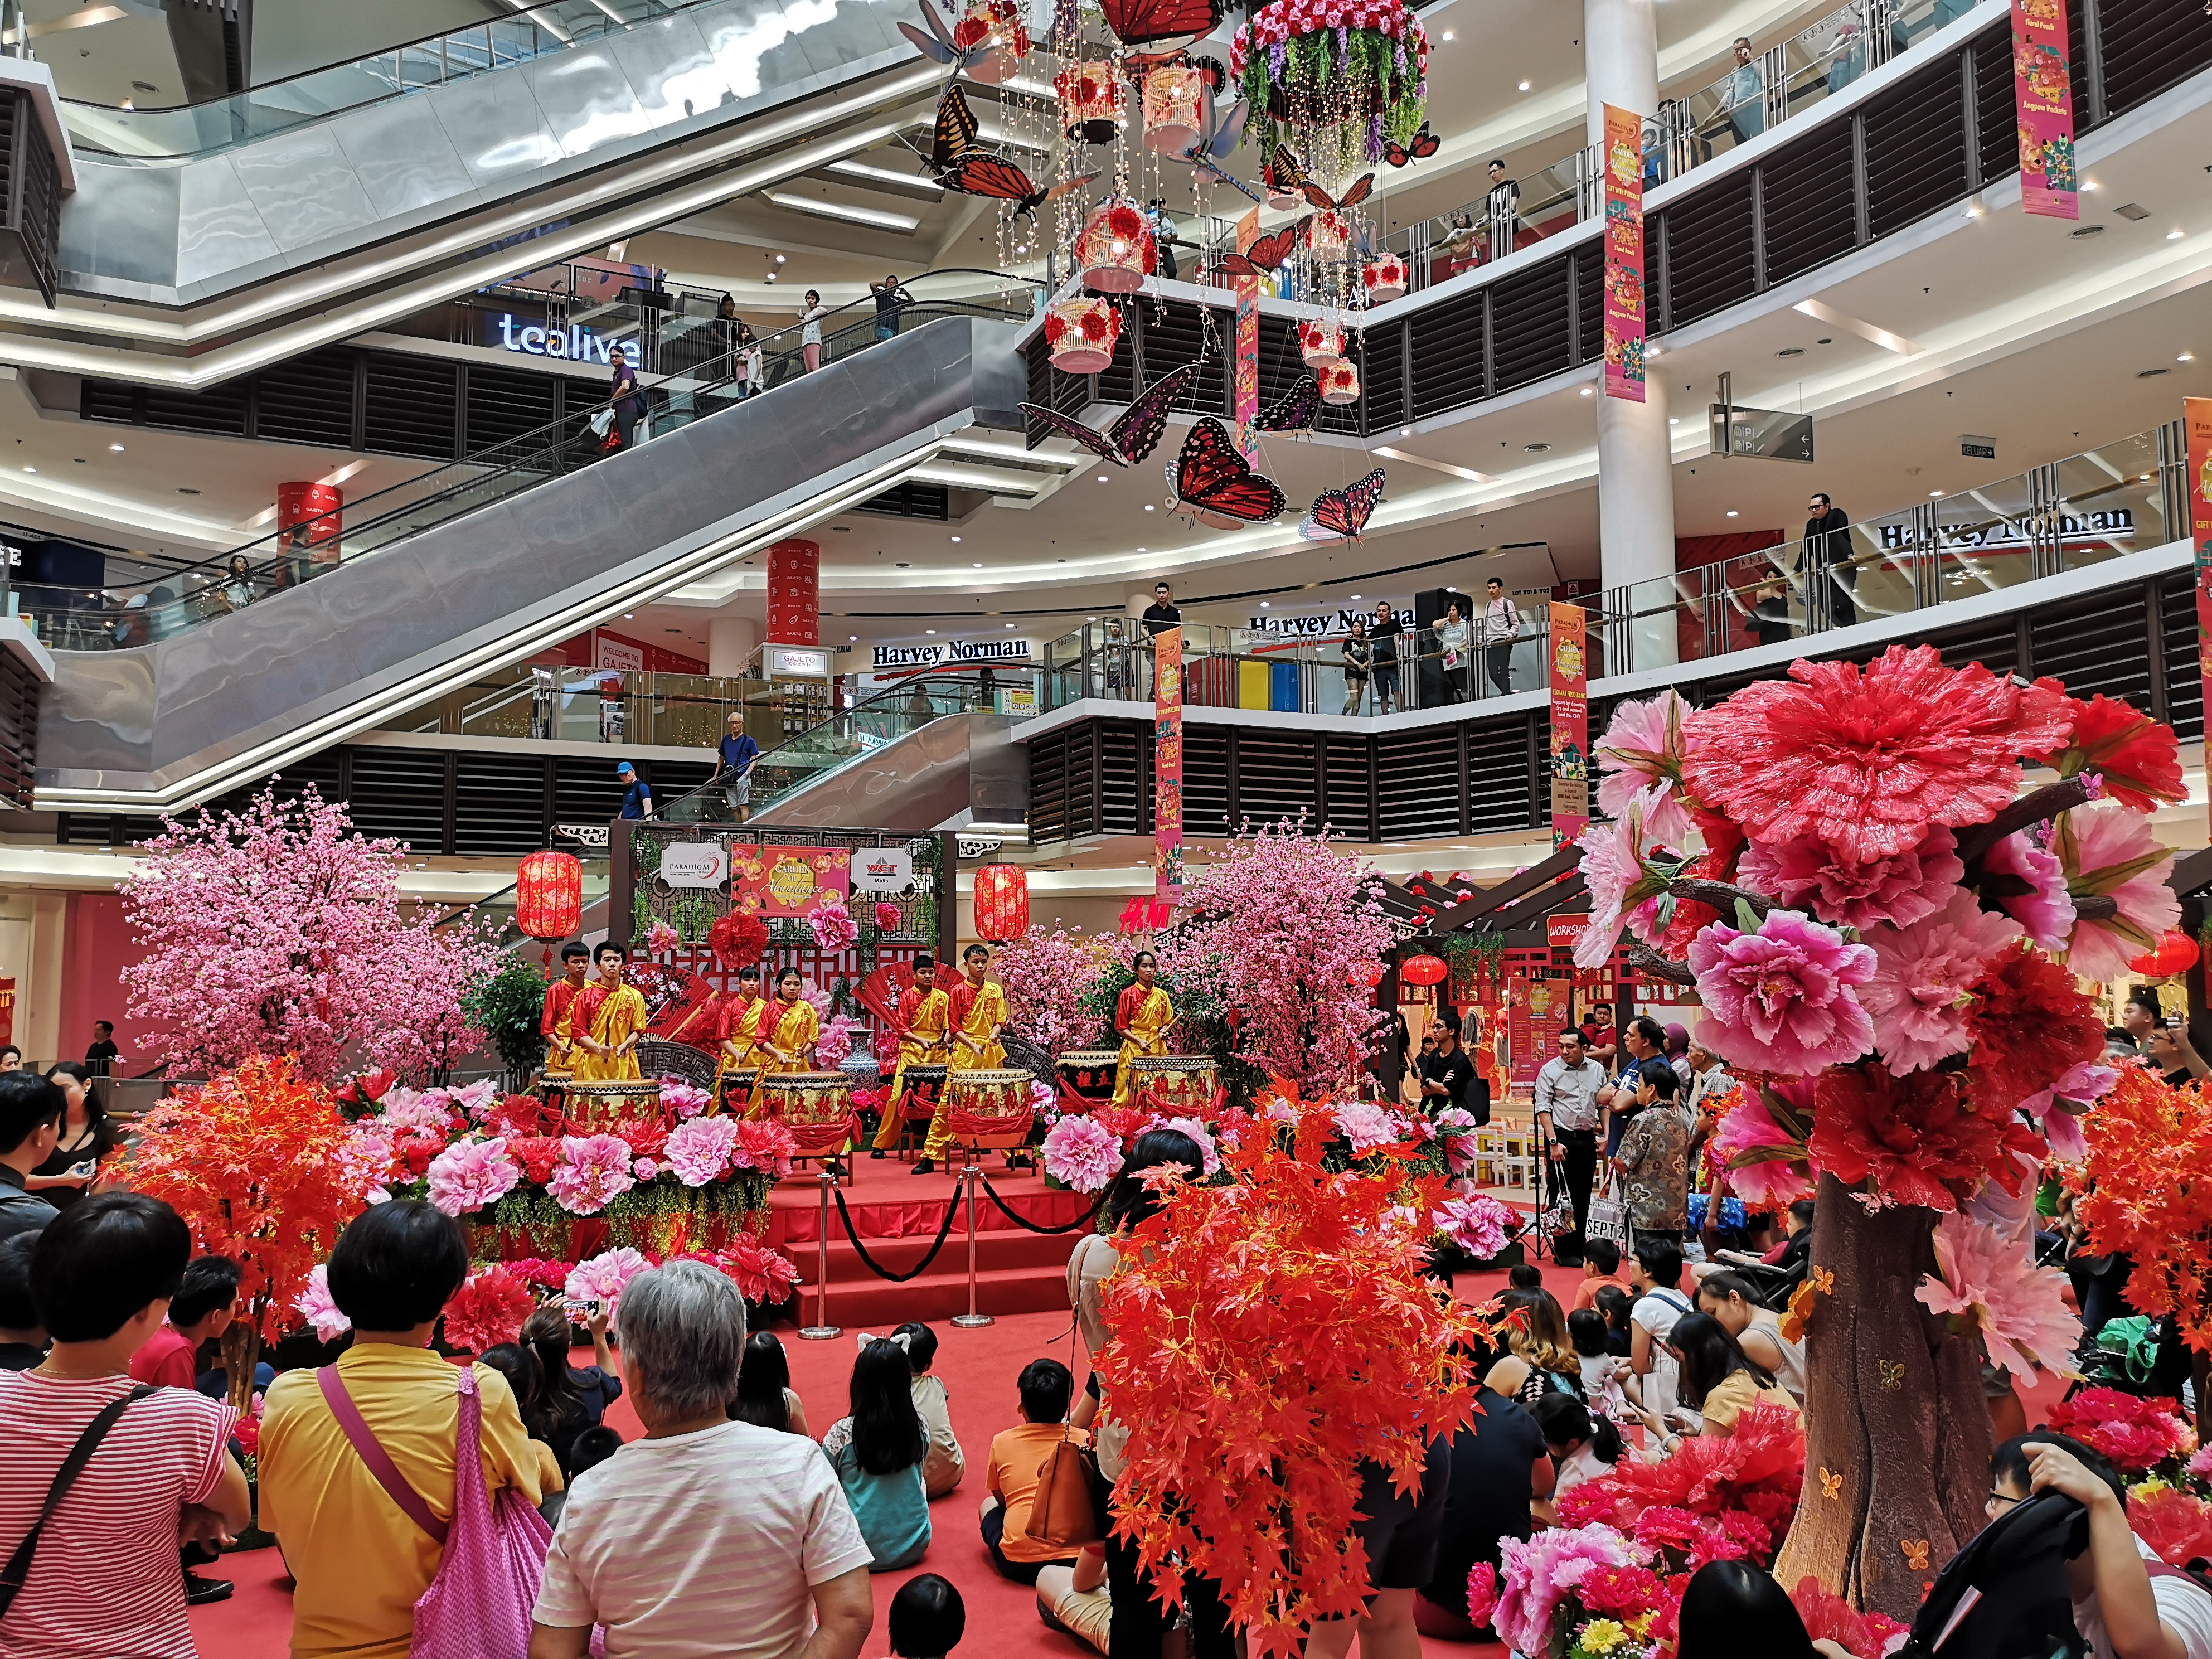 Jaya petaling paradigm mall